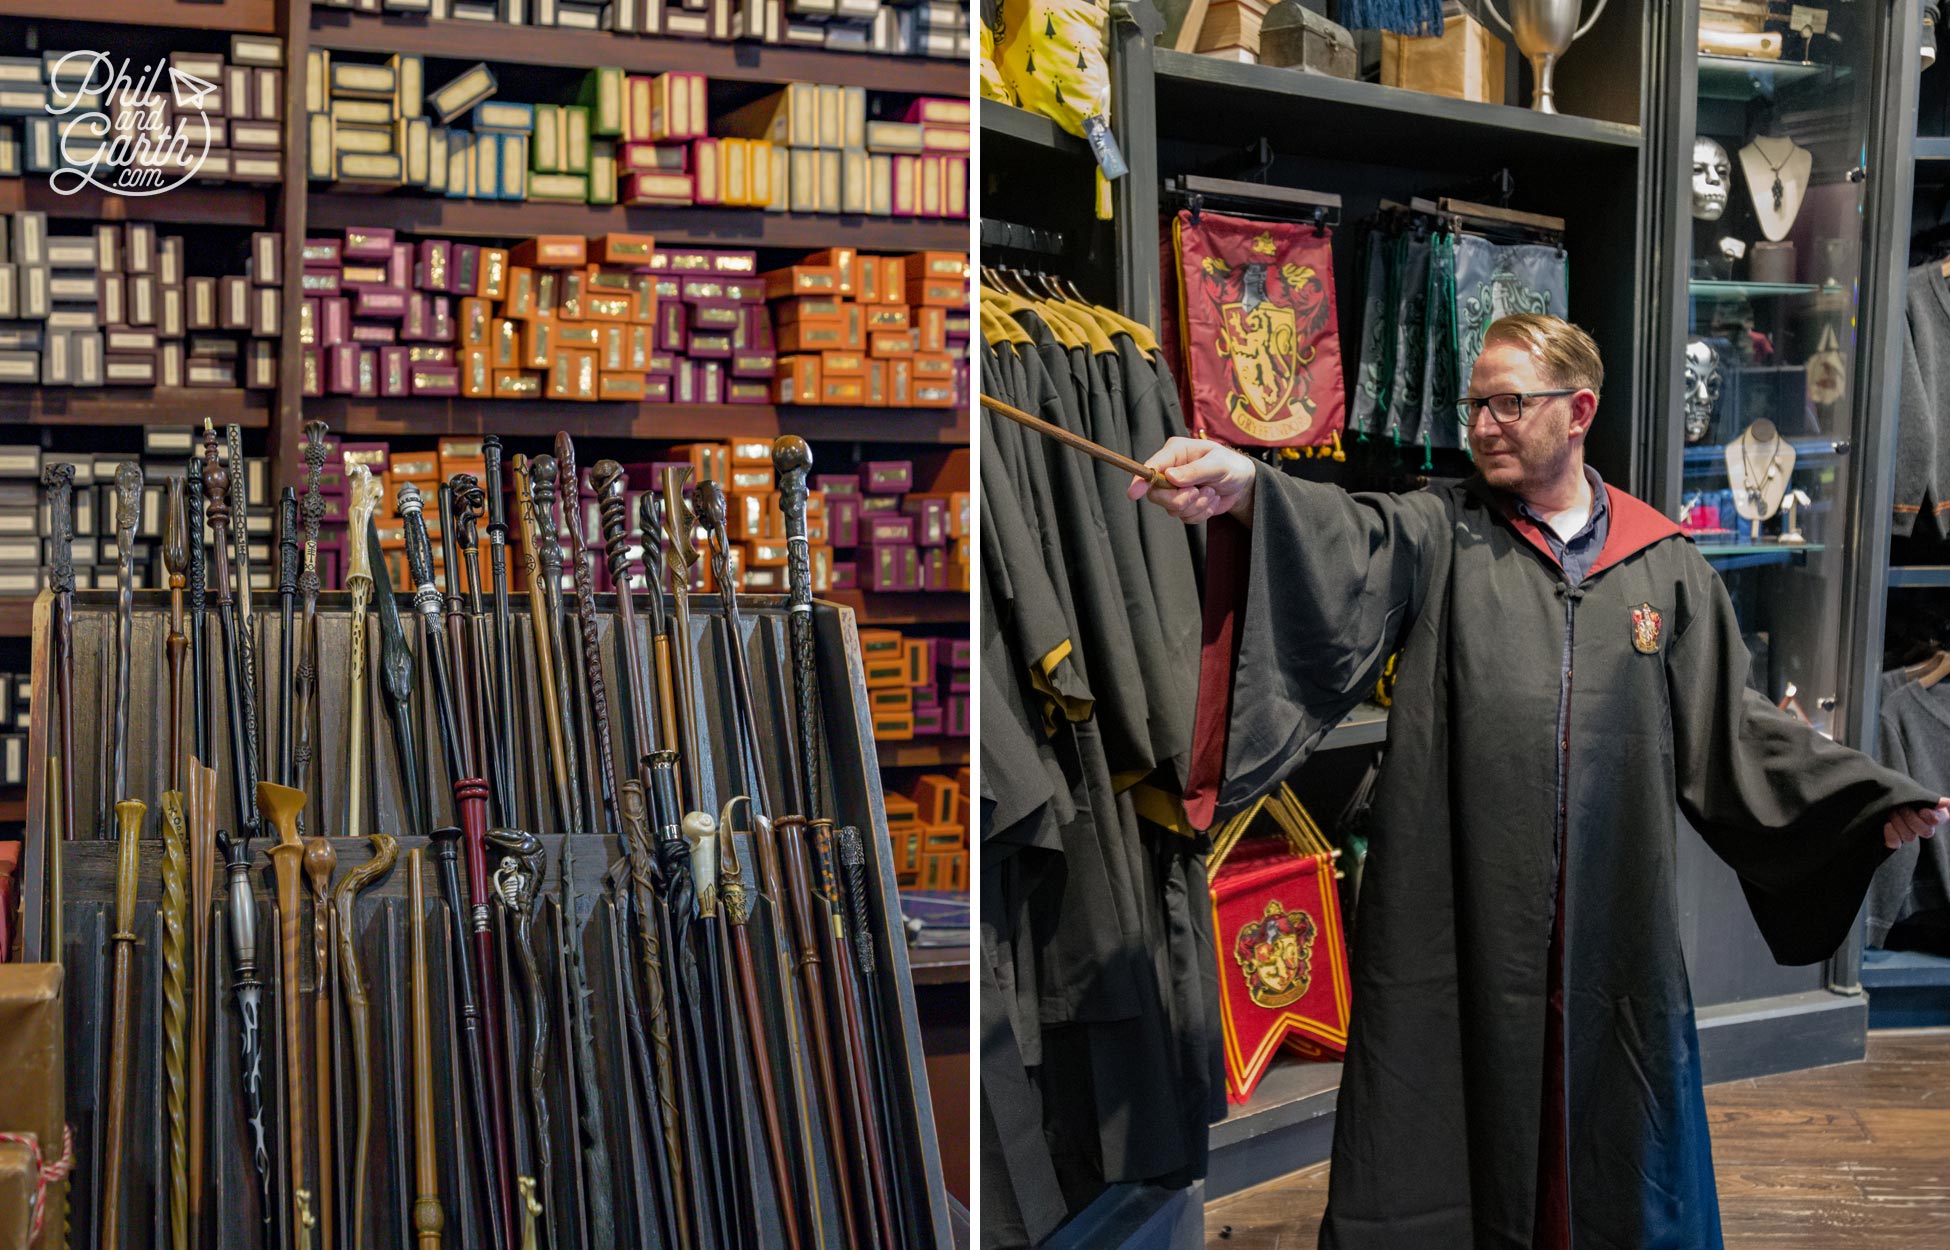 The Harry Potter souvenir shop is immense!